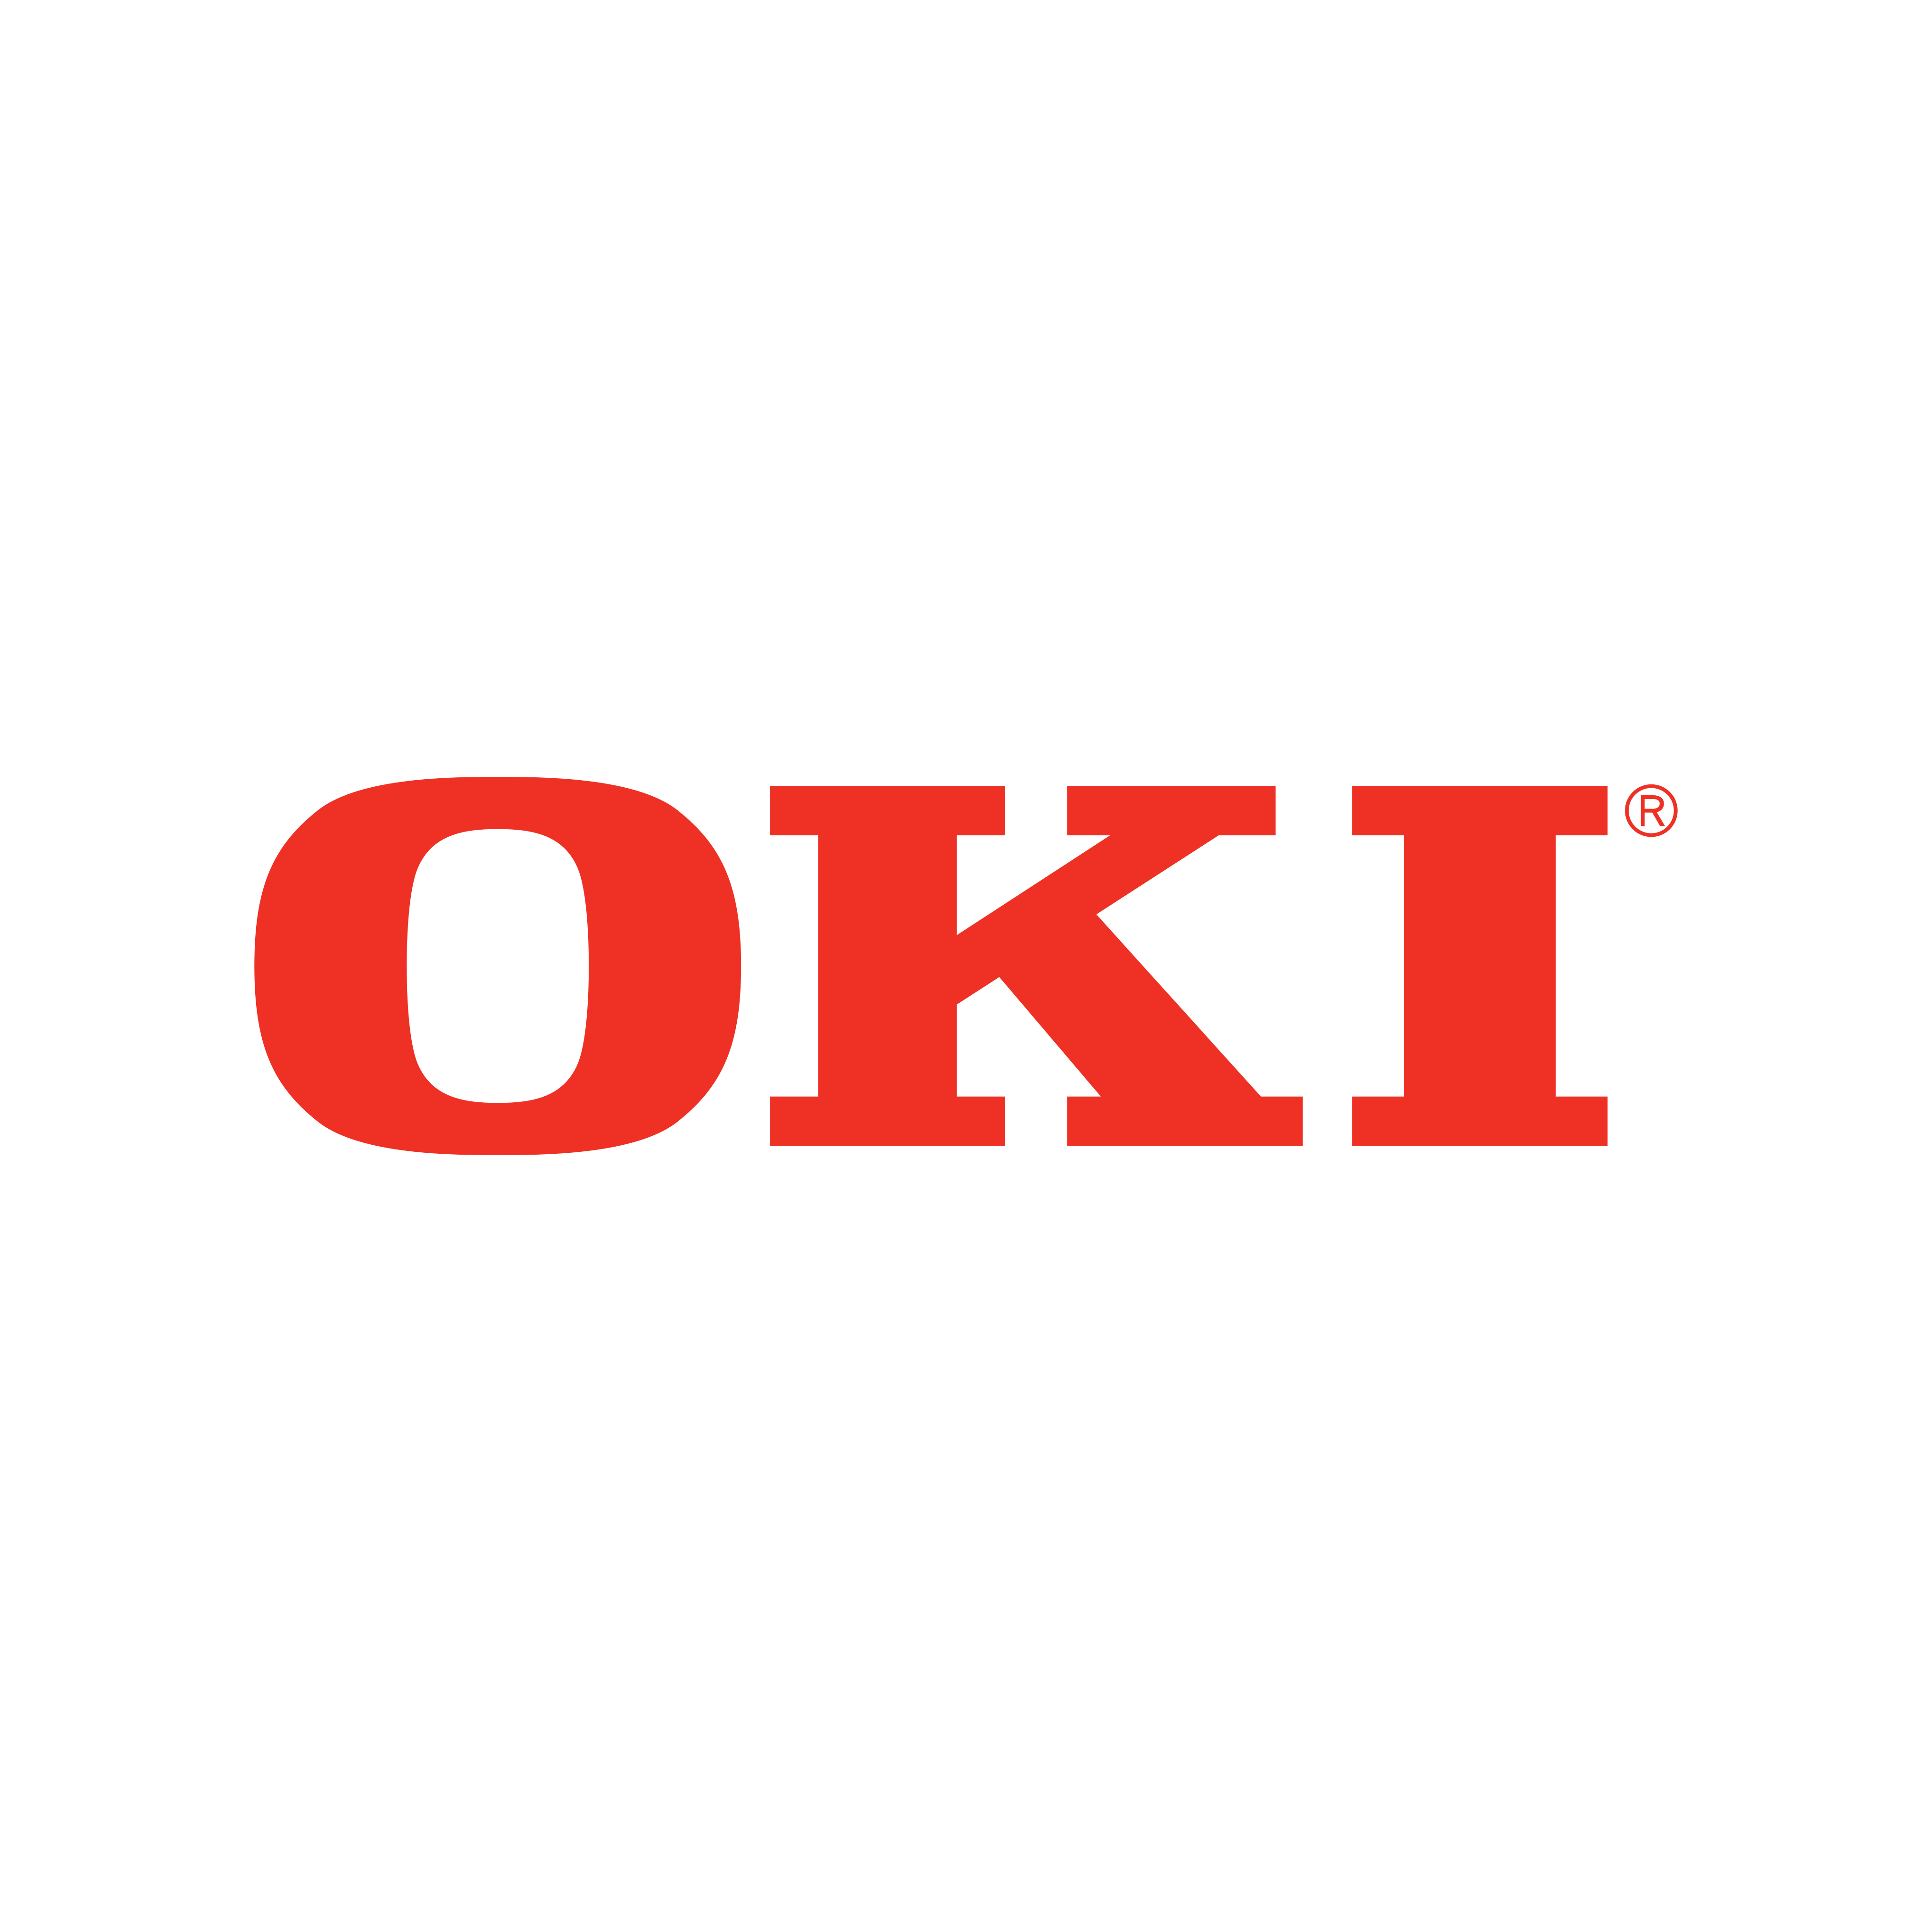 oki data logo 0 - OKI Logo